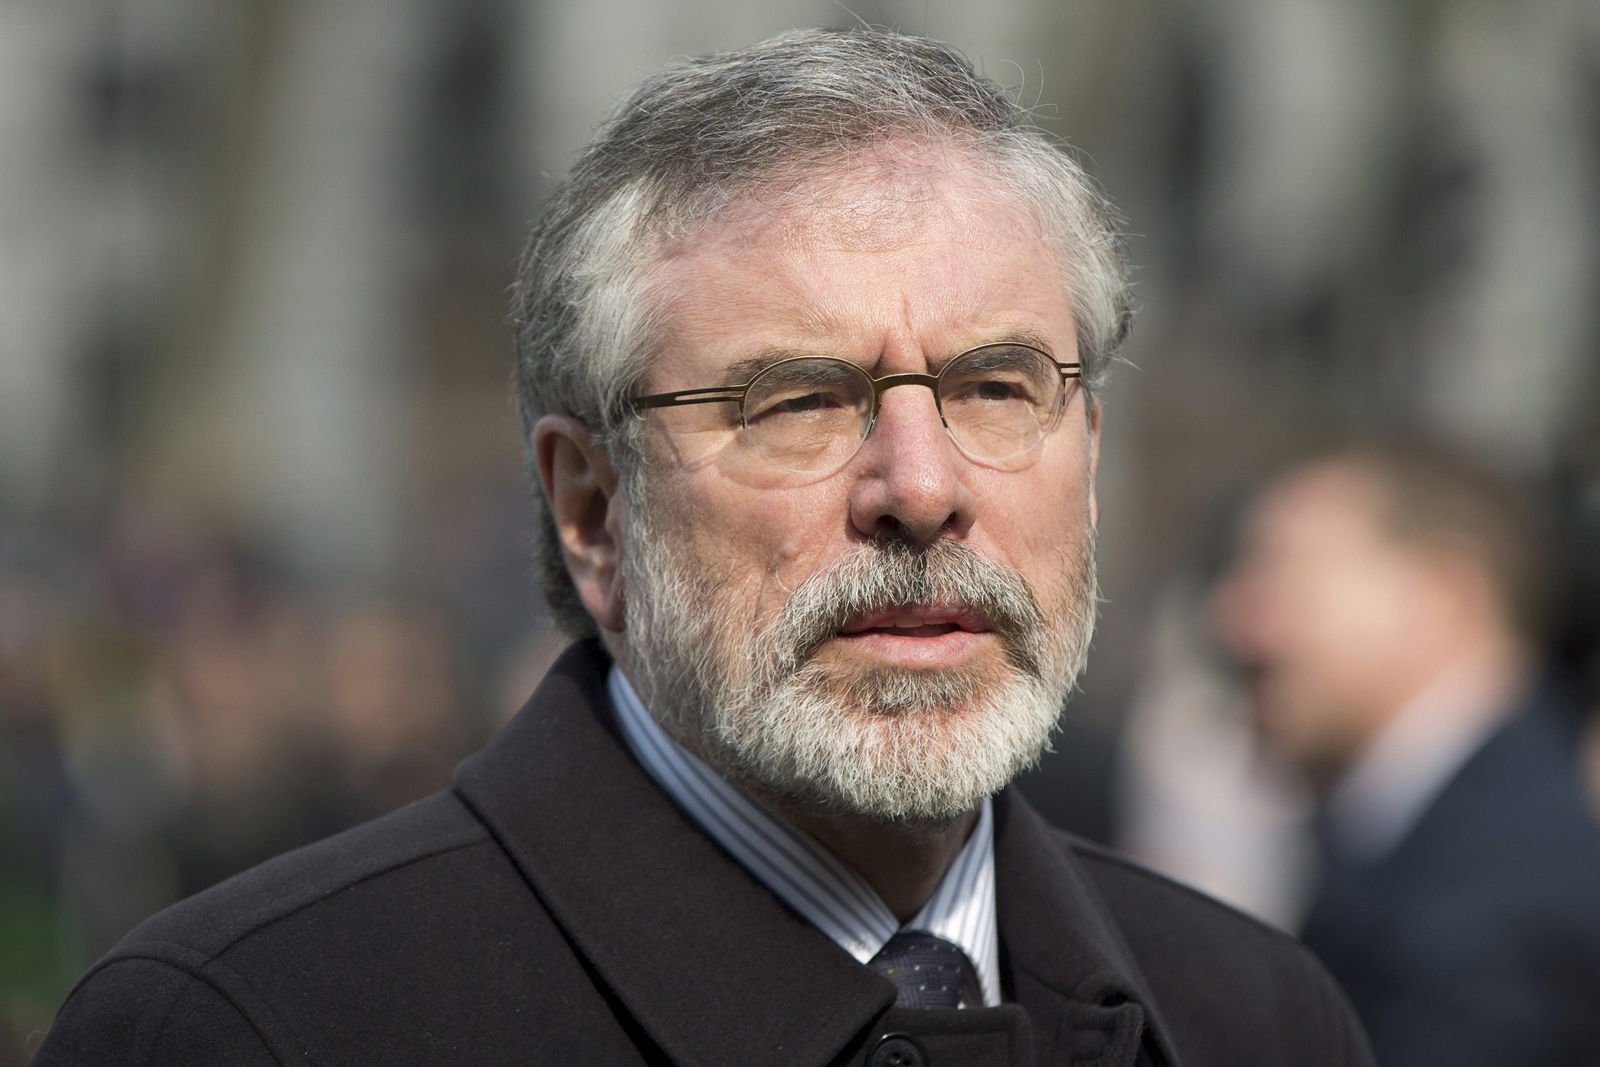 La detención de Gerry Adams divide al Gobierno de Irlanda del Norte y agita al país